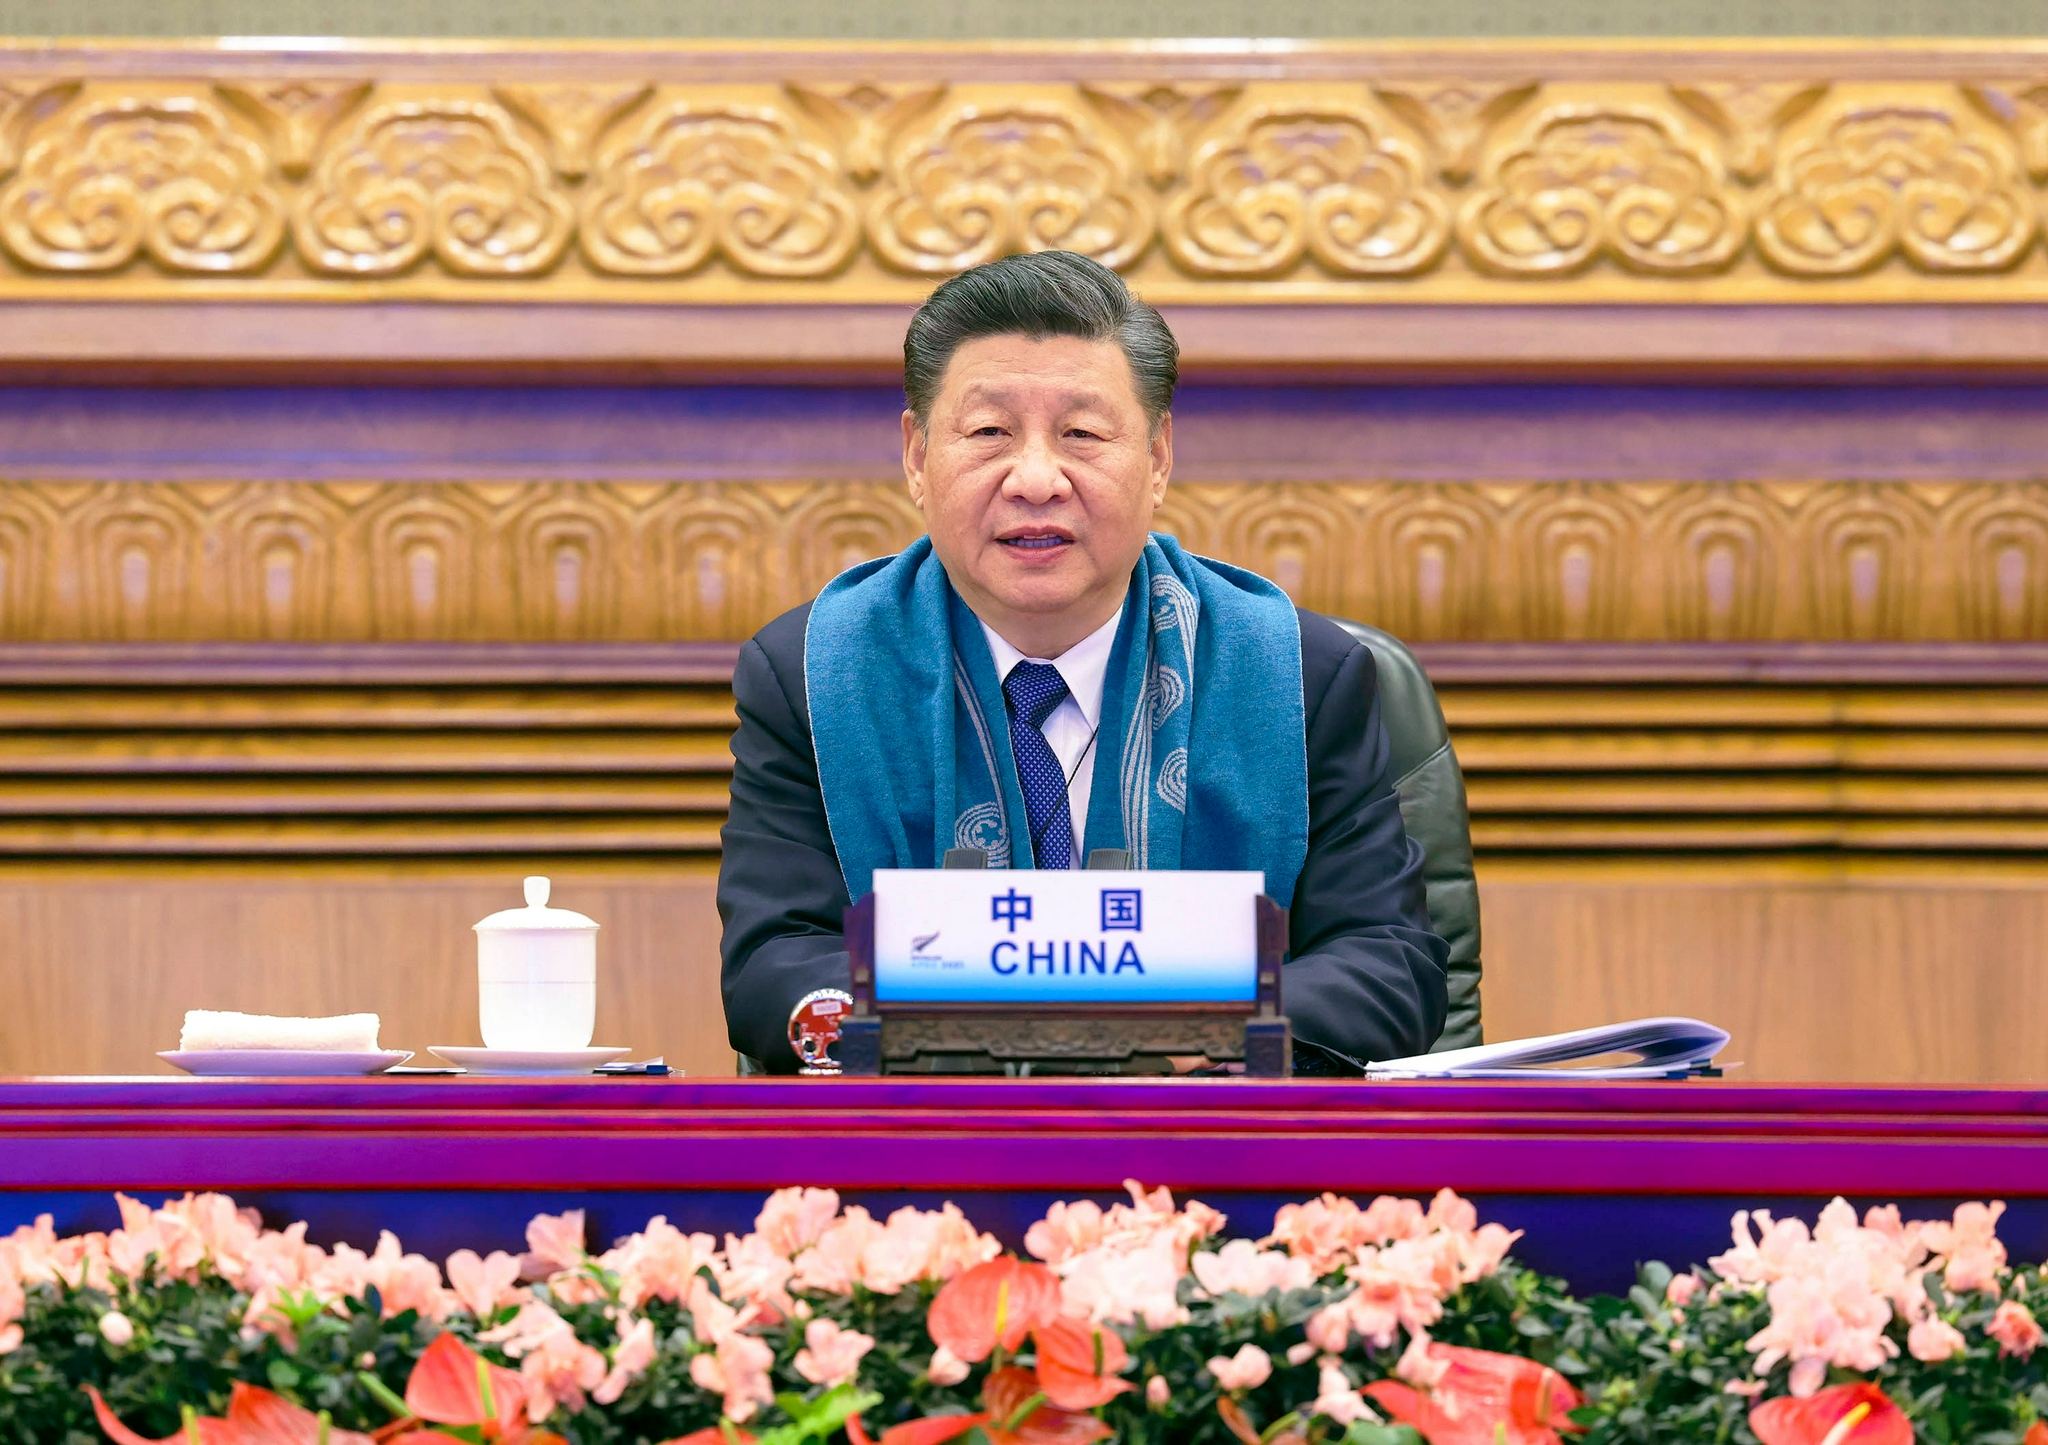 △2021年11月12日晚，国家主席习近平在北京以视频方式出席亚太经合组织第二十八次领导人非正式会议并发表重要讲话。